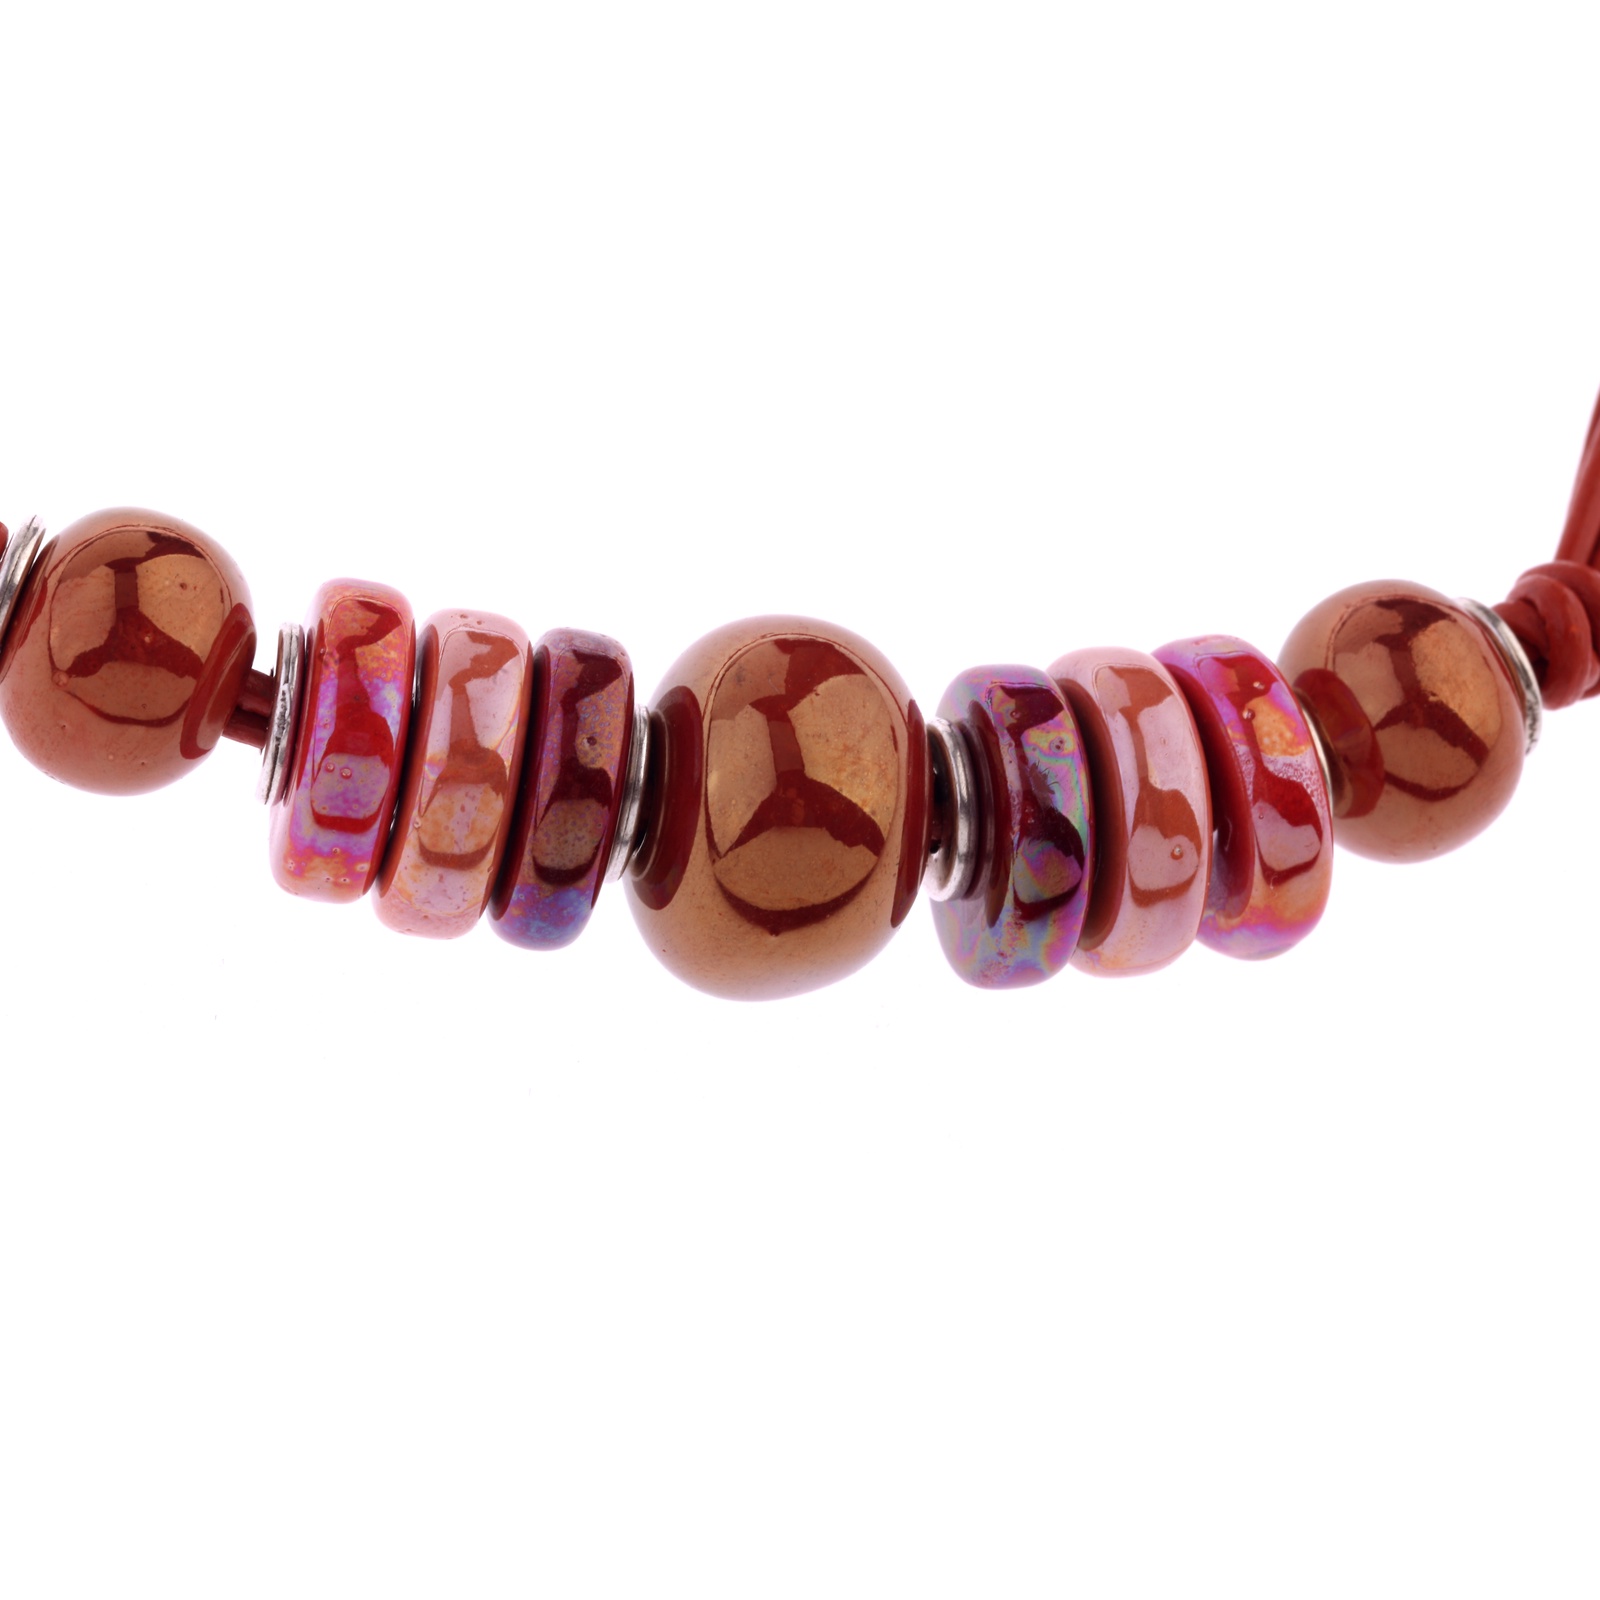 фото Колье/ожерелье бижутерное By Dziubeka 45 см, Керамика, Керамика, 45 см, бордовый, коричневый, розовый